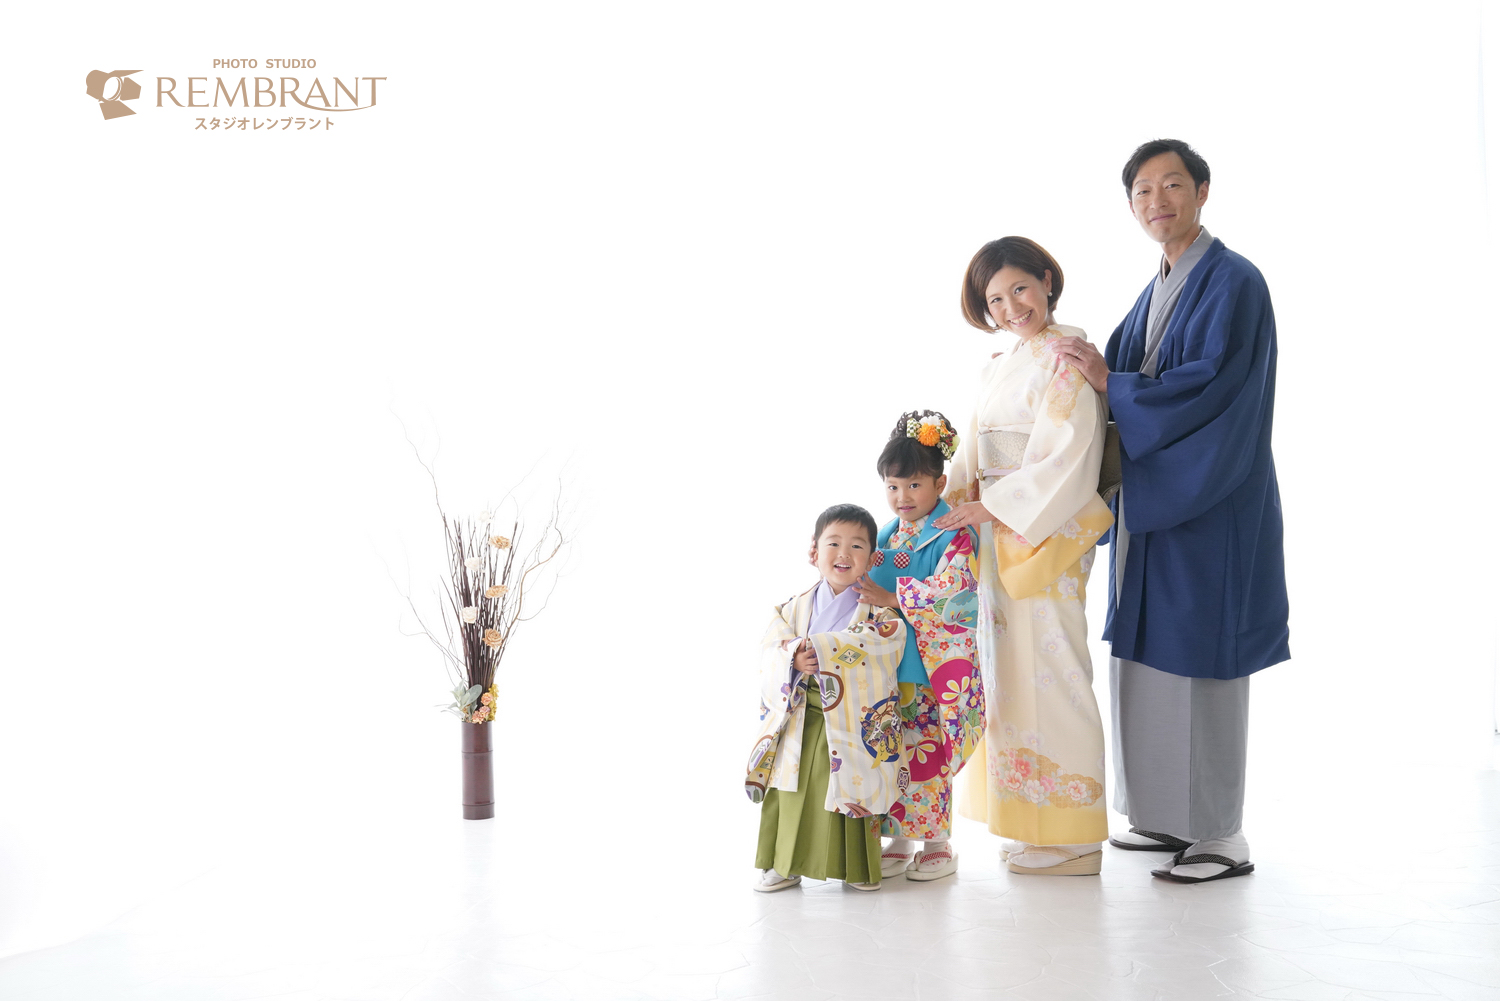 おしゃれで自然な家族写真 京都のおしゃれな写真館 スタジオレンブラント